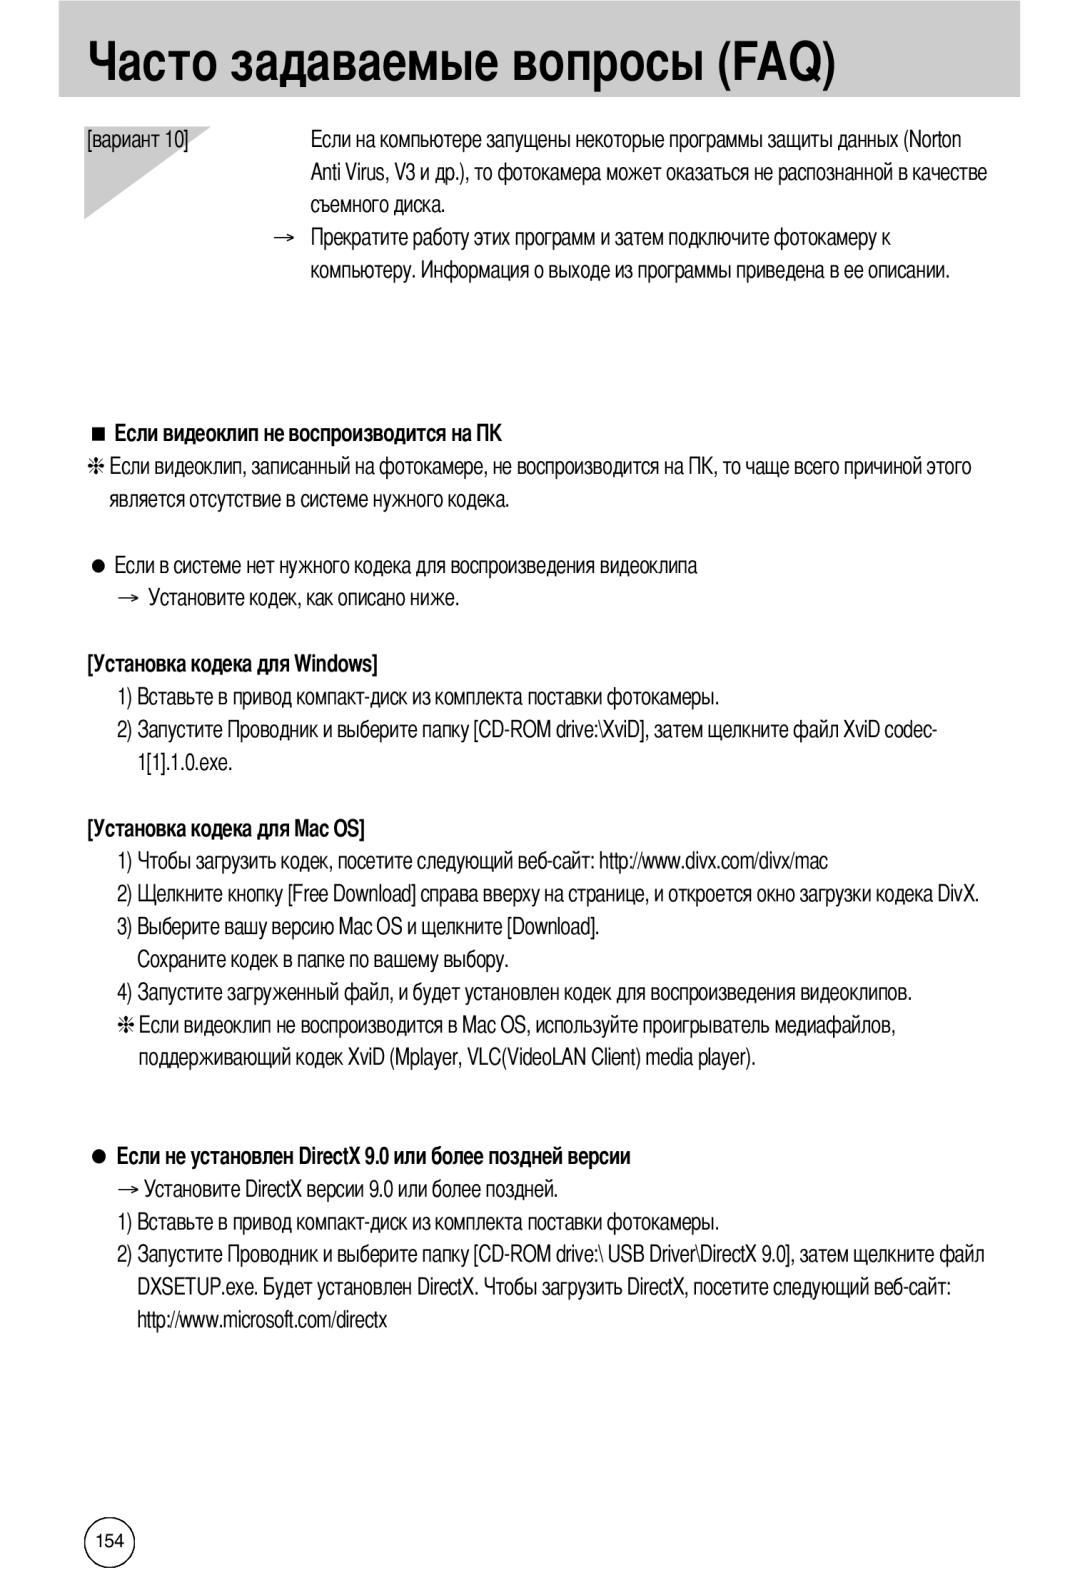 Samsung EC-I50ZZBBA/FR компьютеру, является отсутствие в системе нужного кодека, → Установите кодек, как описано ниже 